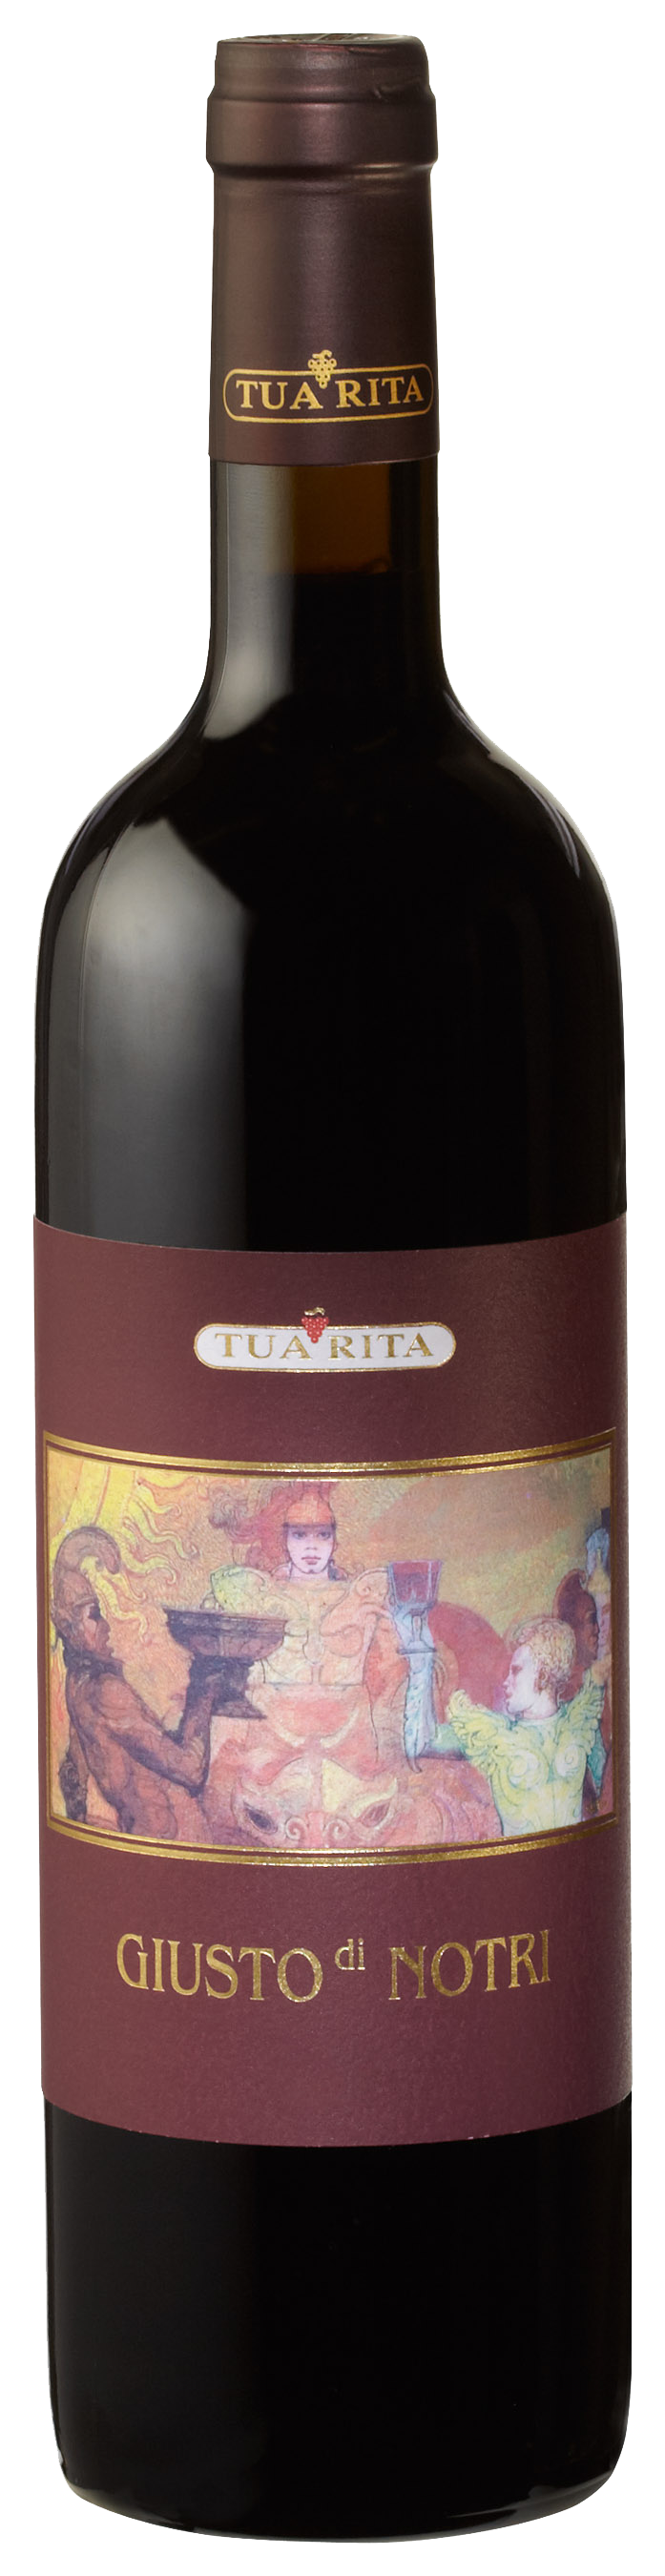 Tua Rita Giusto di Notri 2017 wine bottle